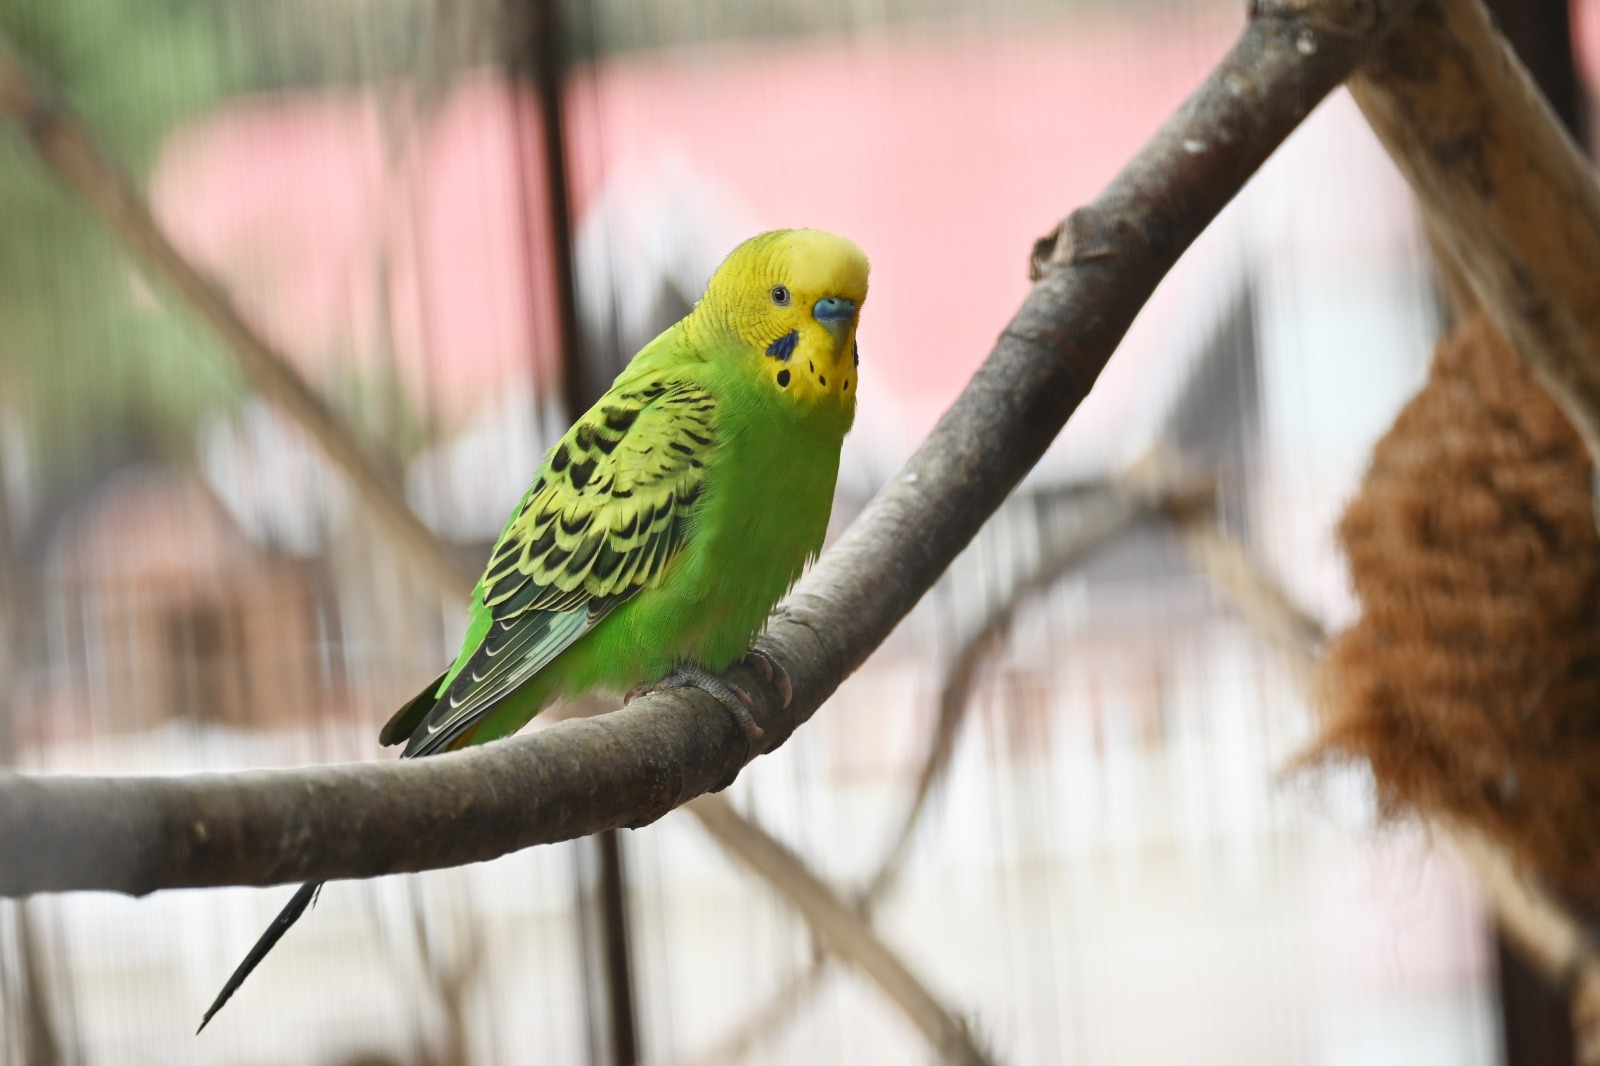 Cuando se tienen  aves como mascotas, hay que proveerles de todo lo necesario, para que su vida sea lo más parecida a su entorno natural. (Foto Prensa Libre, Shutterstock)